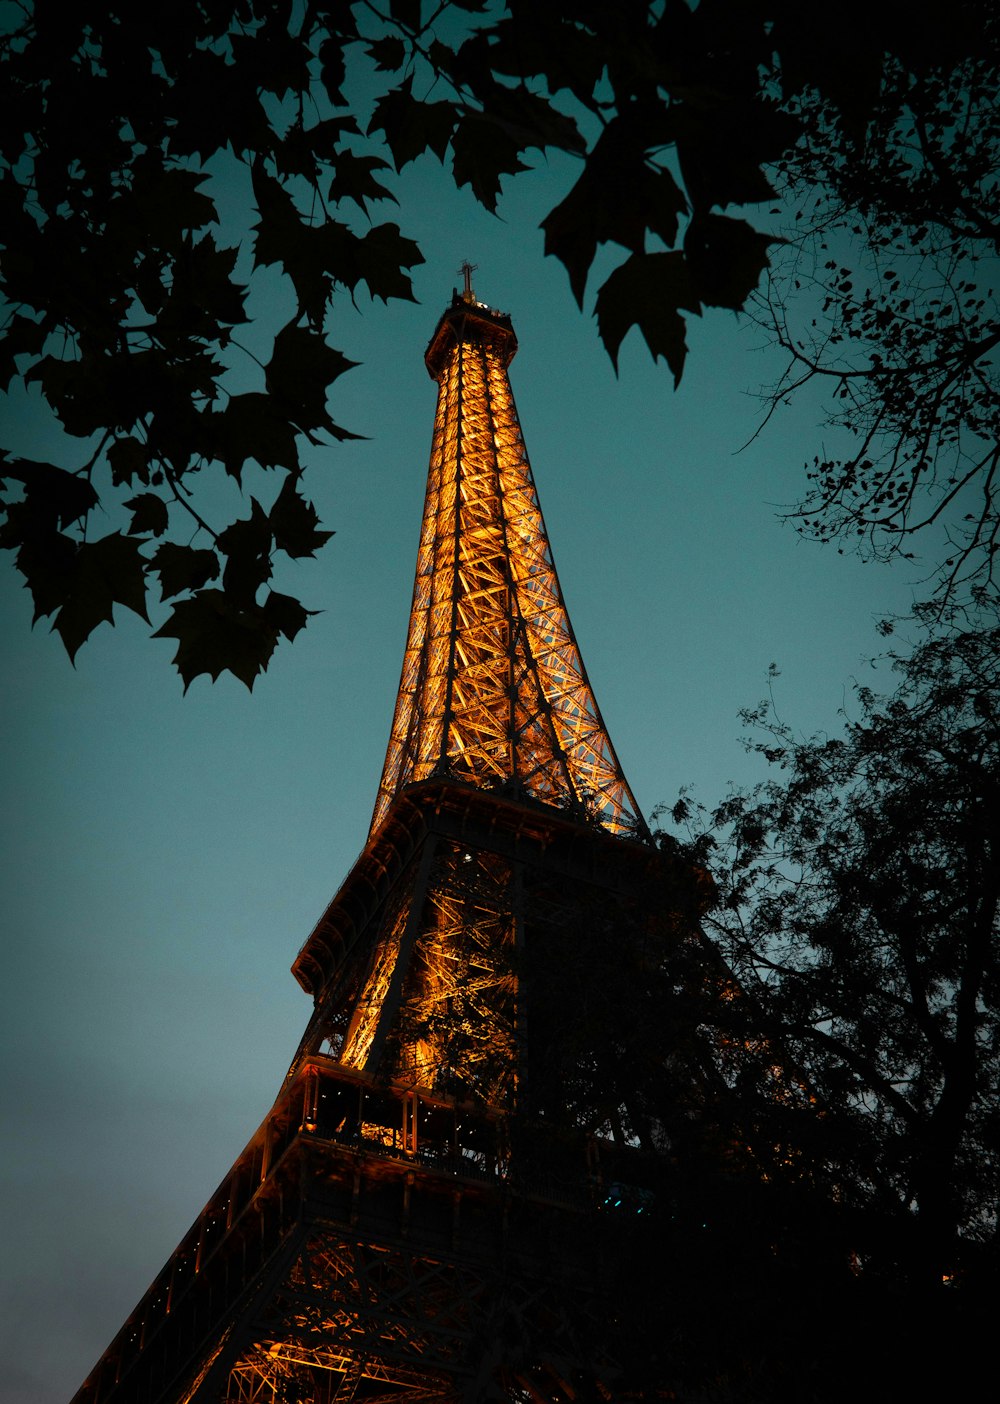 Fotografia in scala di grigi della Torre Eiffel a Parigi